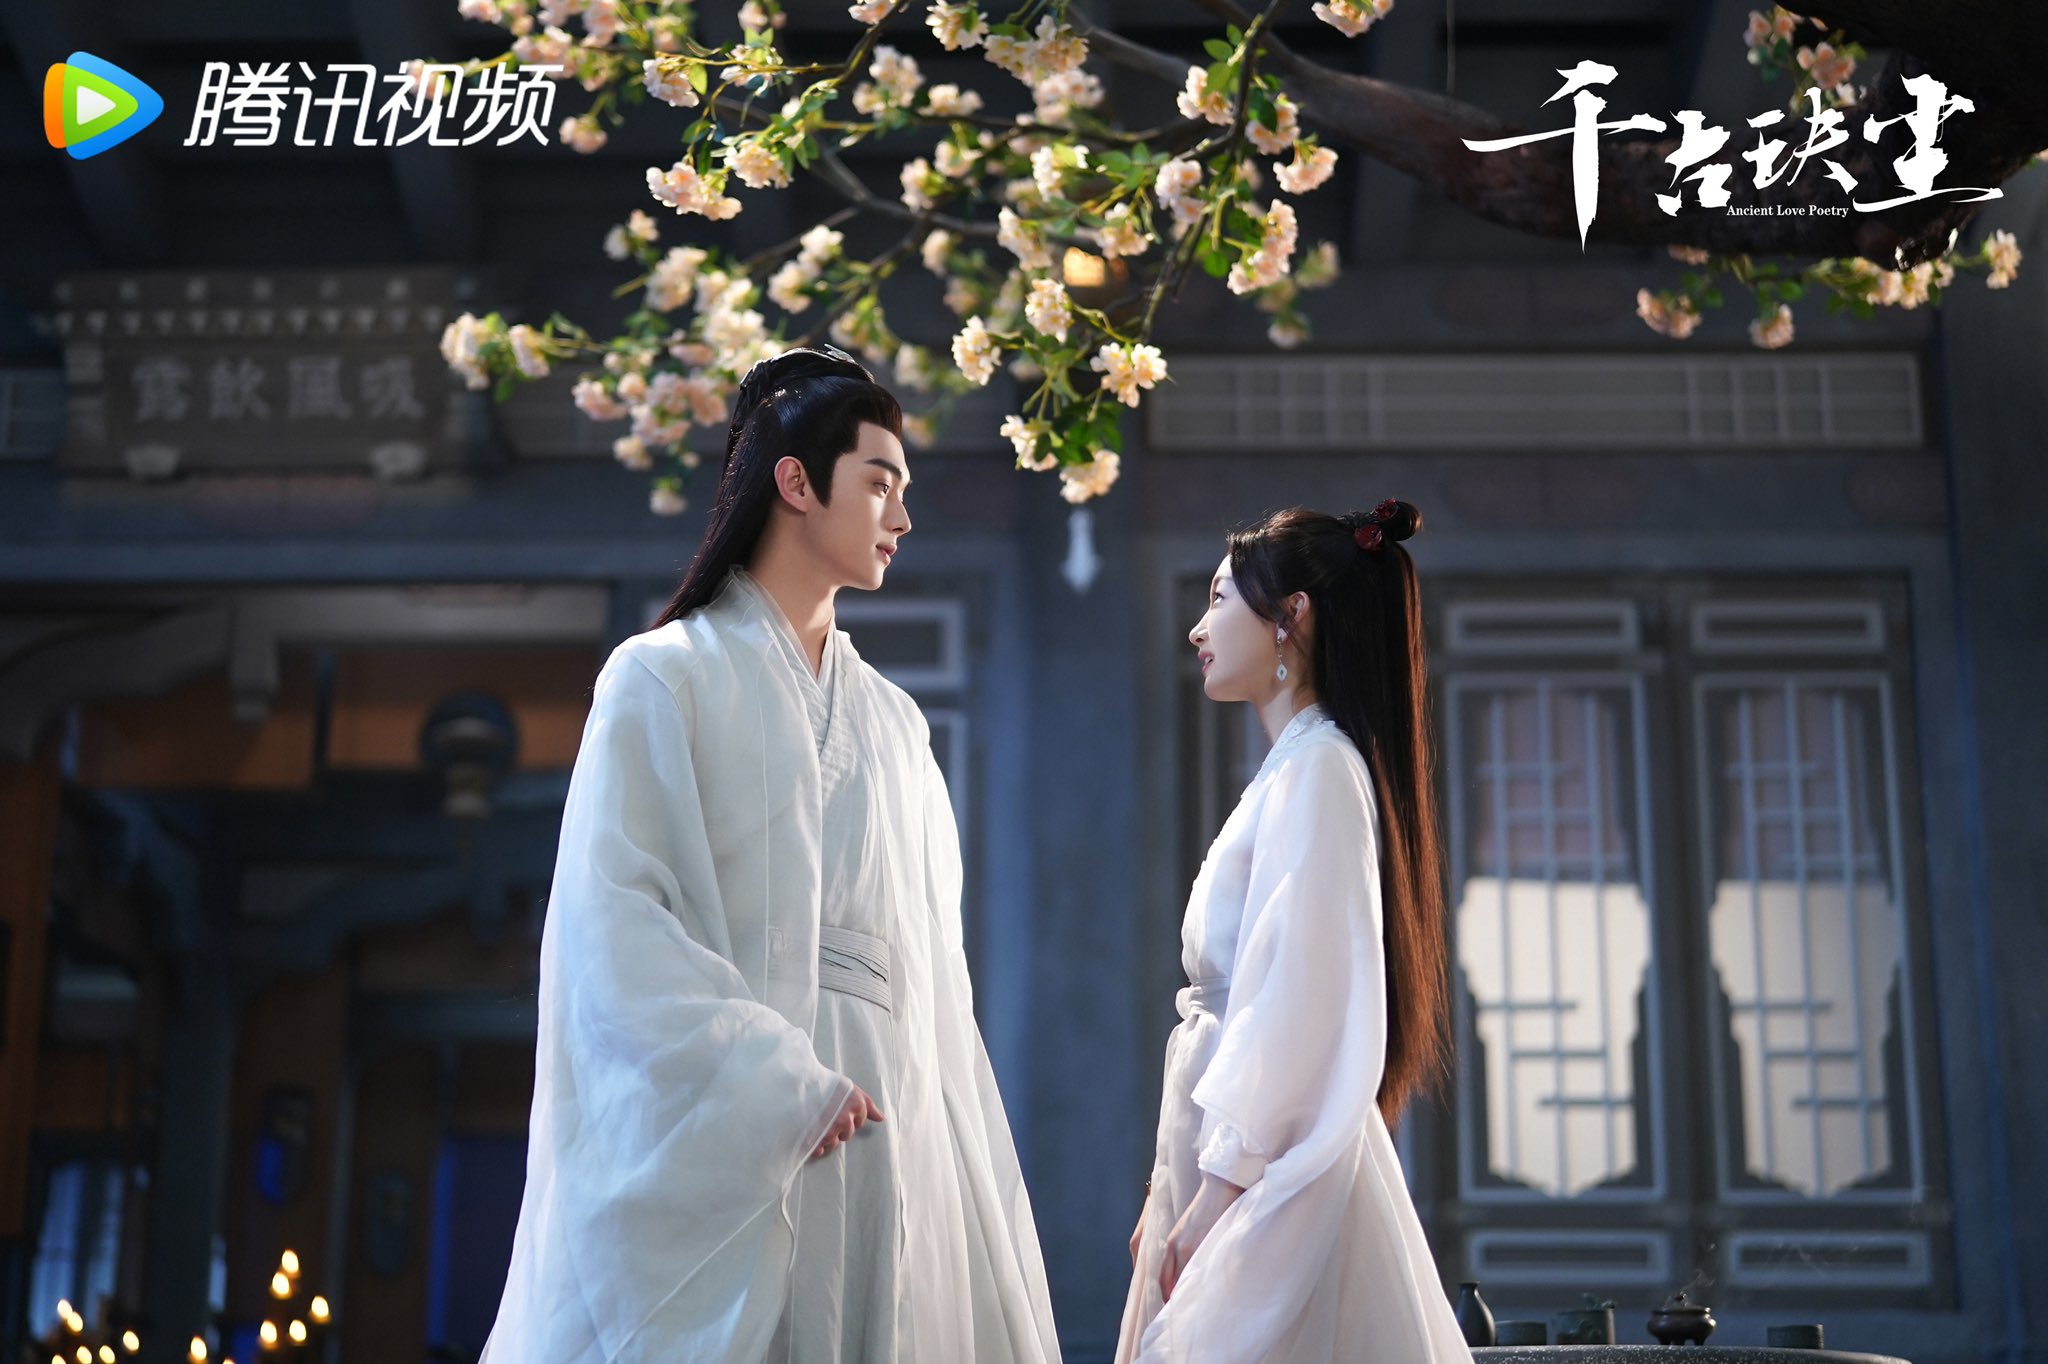 Зрители раскритиковали игру Сюй Кая и Чжоу Дун Юй в дораме "Древняя любовная поэзия"